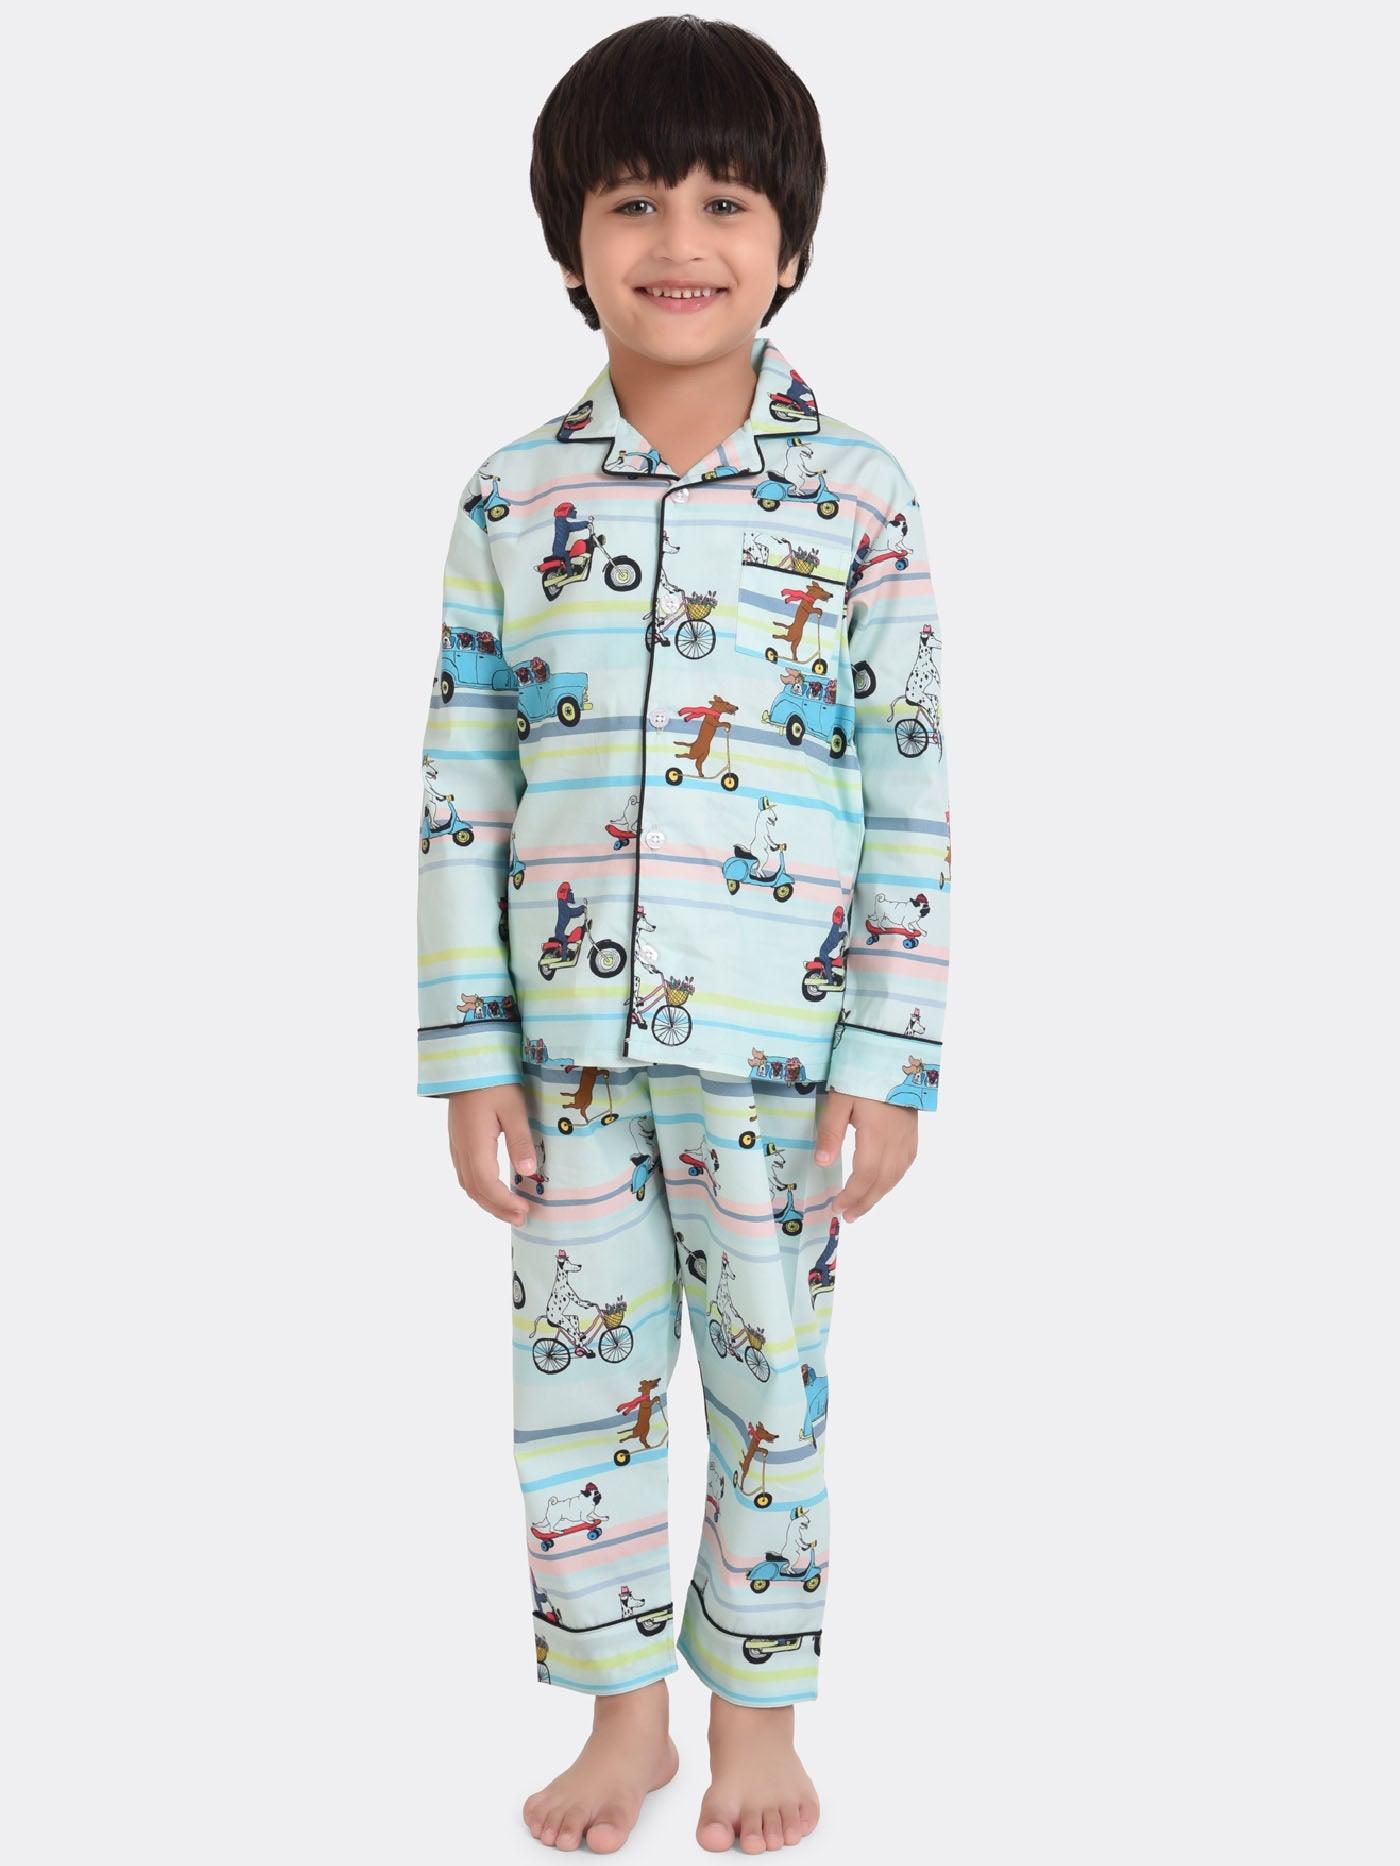 Boys nightwear / Boys Pyjama set / Kids Boys Nightsuit / Boys Night suit /  Boys nightdress / Boys Nightsuit